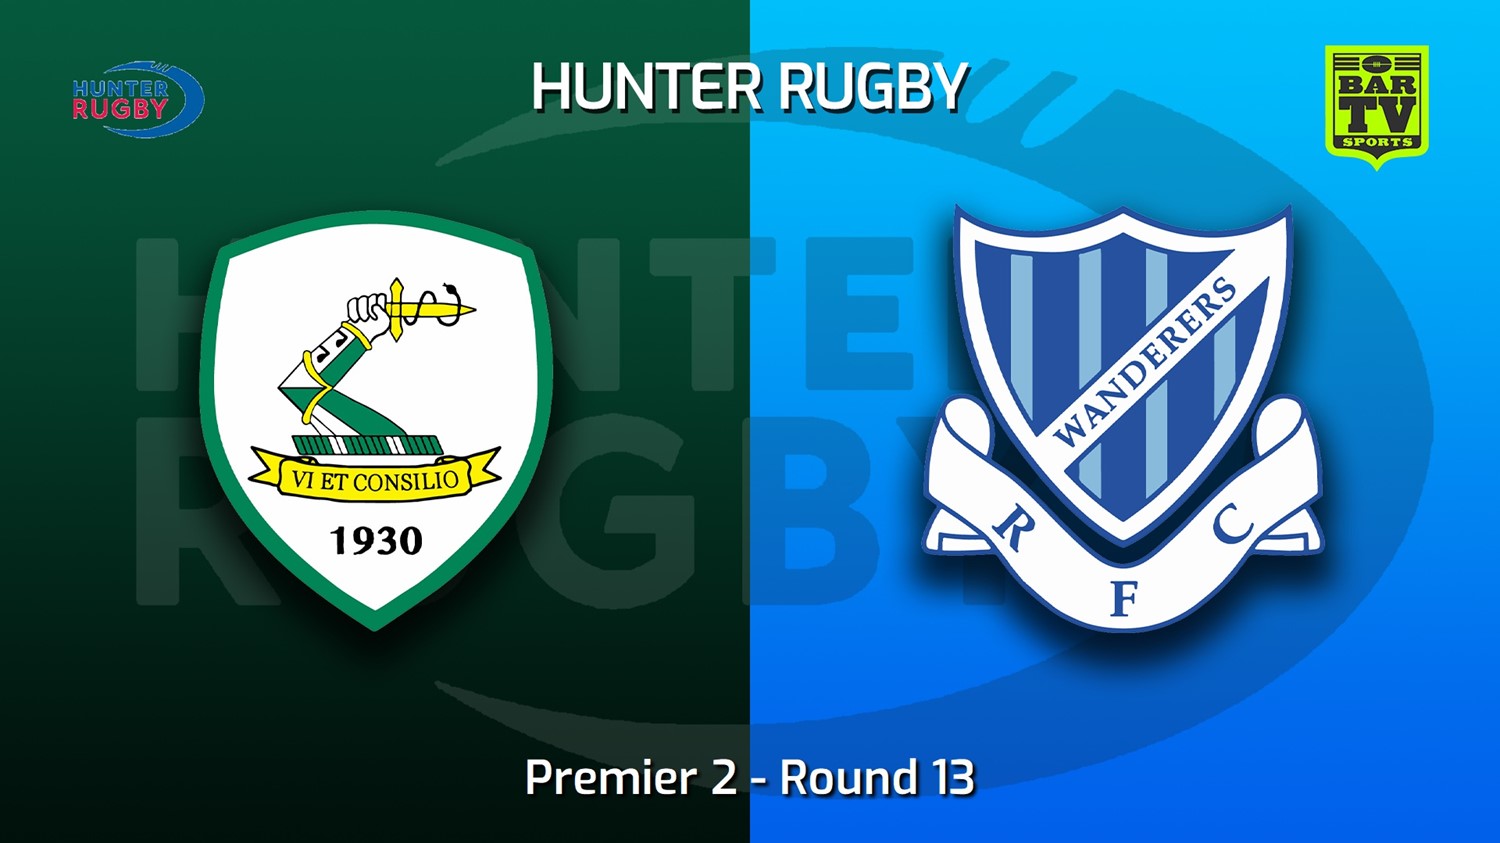 220723-Hunter Rugby Round 13 - Premier 2 - Merewether Carlton v Wanderers Slate Image